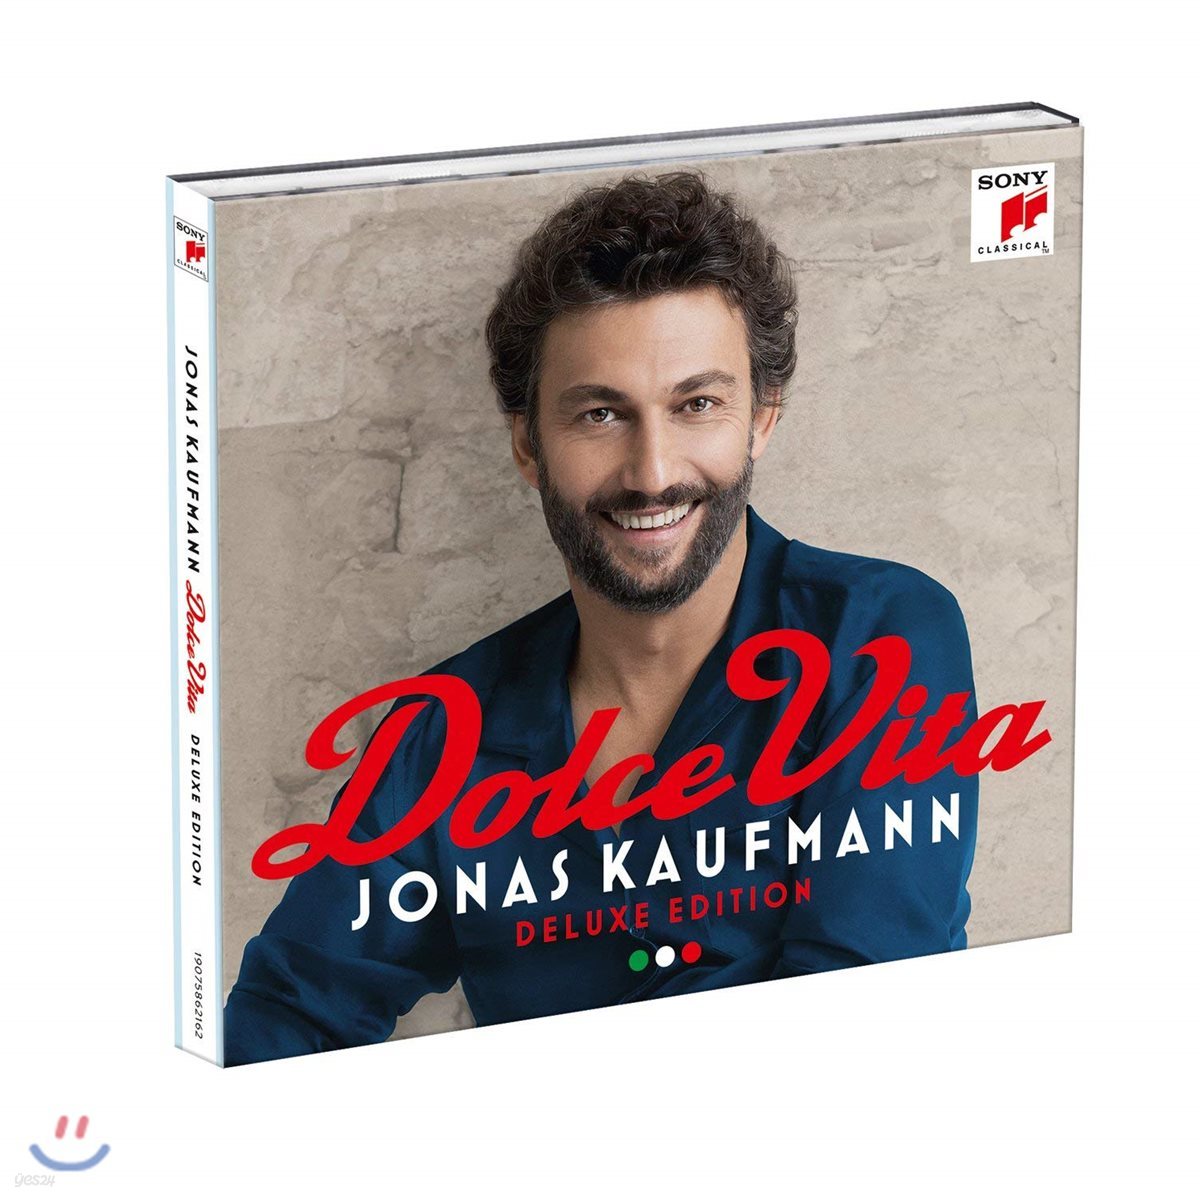 Jonas Kaufmann 요나스 카우프만의 달콤한 인생 [돌체 비타] - 이탈리아 앨범 (Dolce Vita)